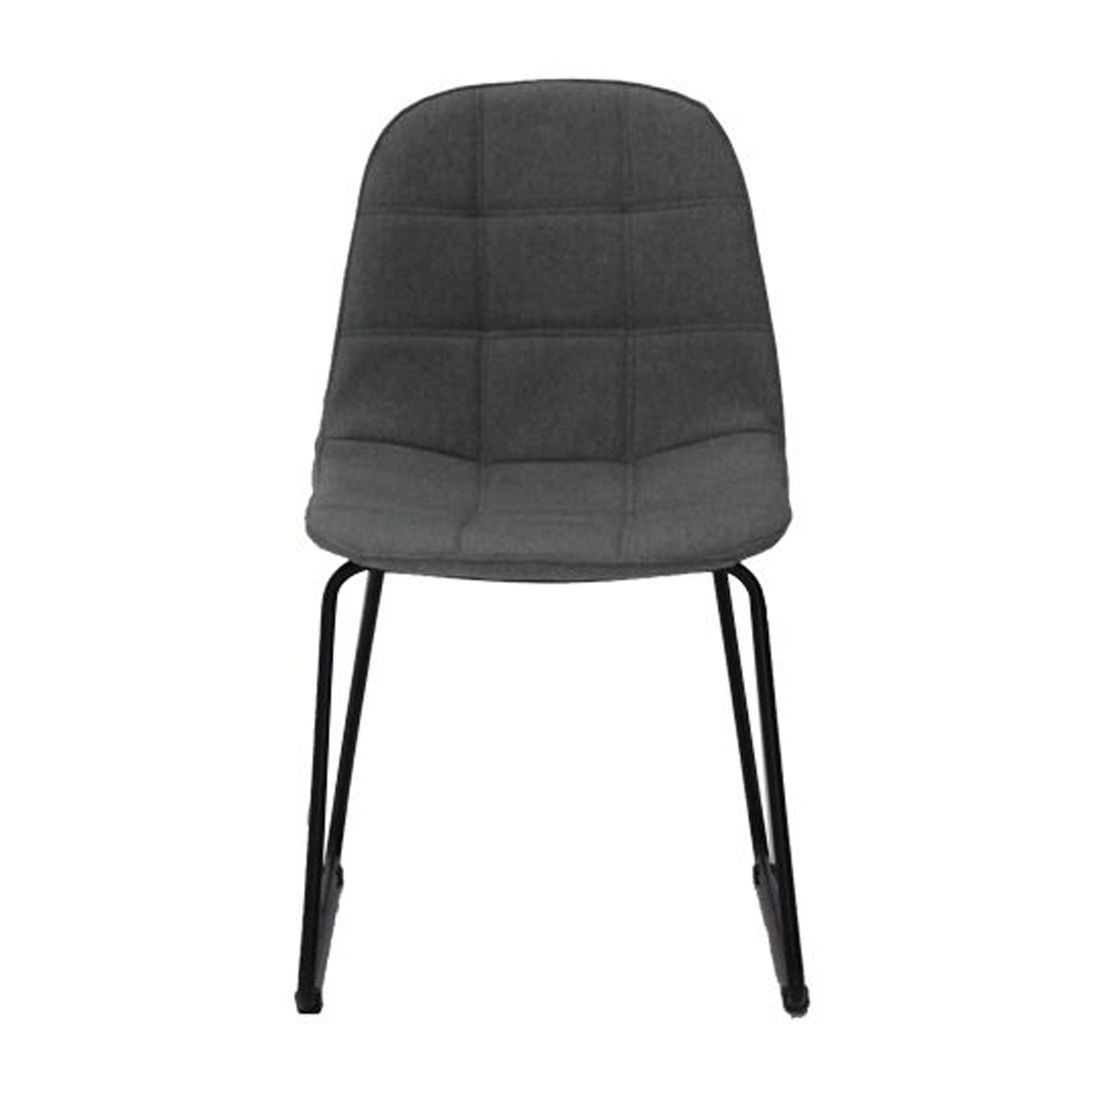 เก้าอี้ทานอาหาร เก้าอี้เหล็กเบาะผ้า รุ่น Lord-SB Design Square